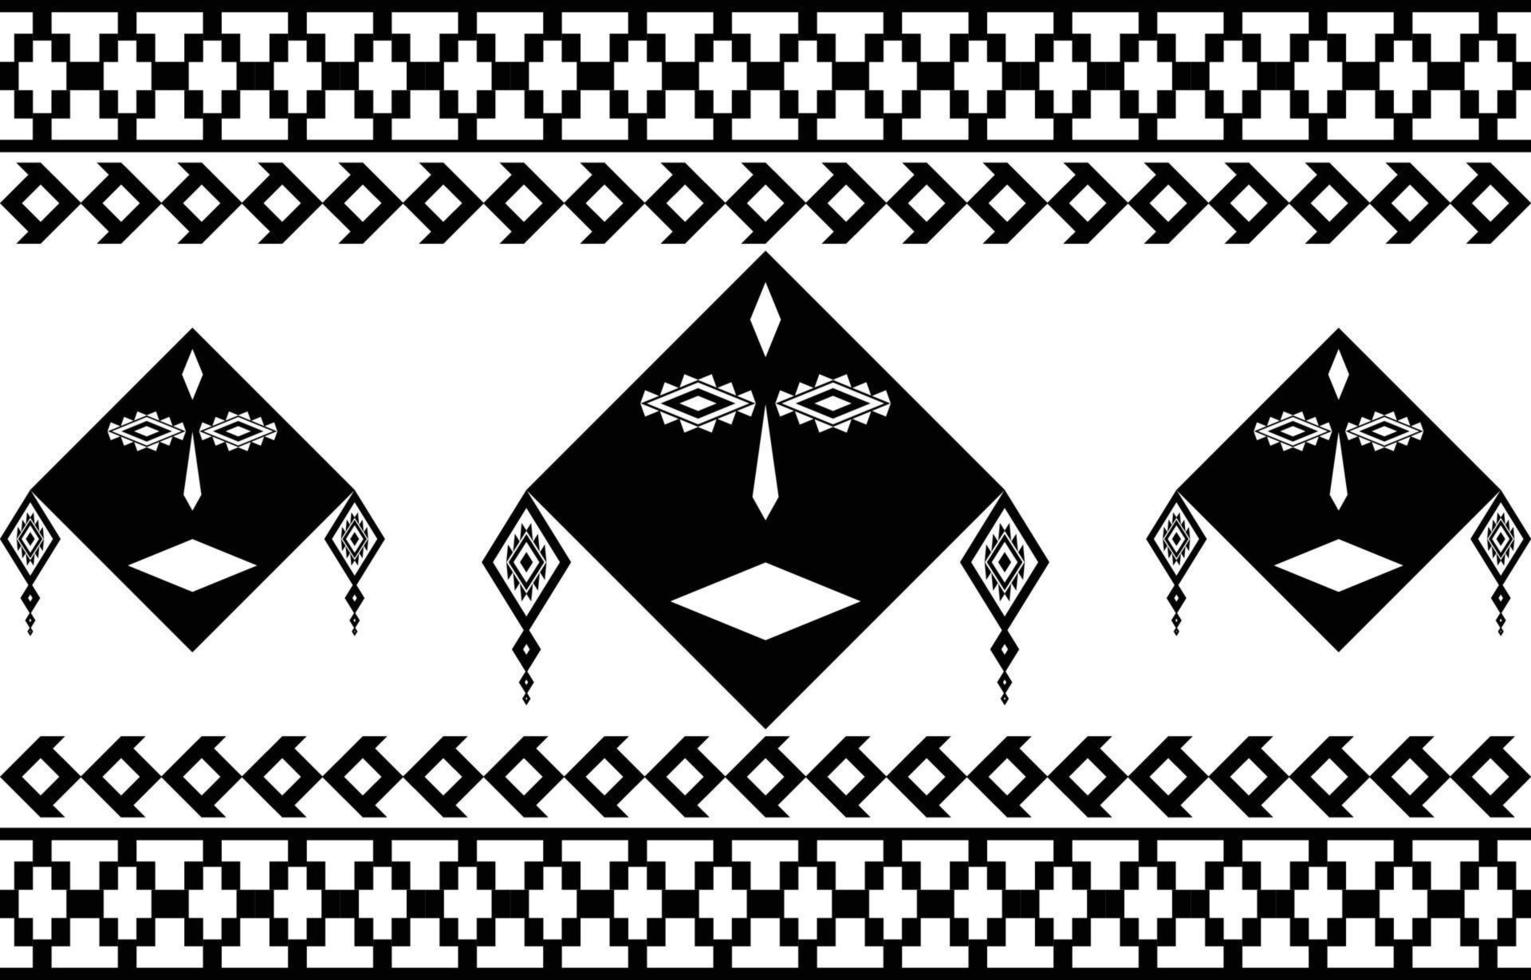 faccia tribale in bianco e nero astratto disegno geometrico etnico per sfondo o carta da parati illustrazione vettoriale per stampare modelli di tessuto, tappeti, camicie, costumi, turbante, cappelli, tende.